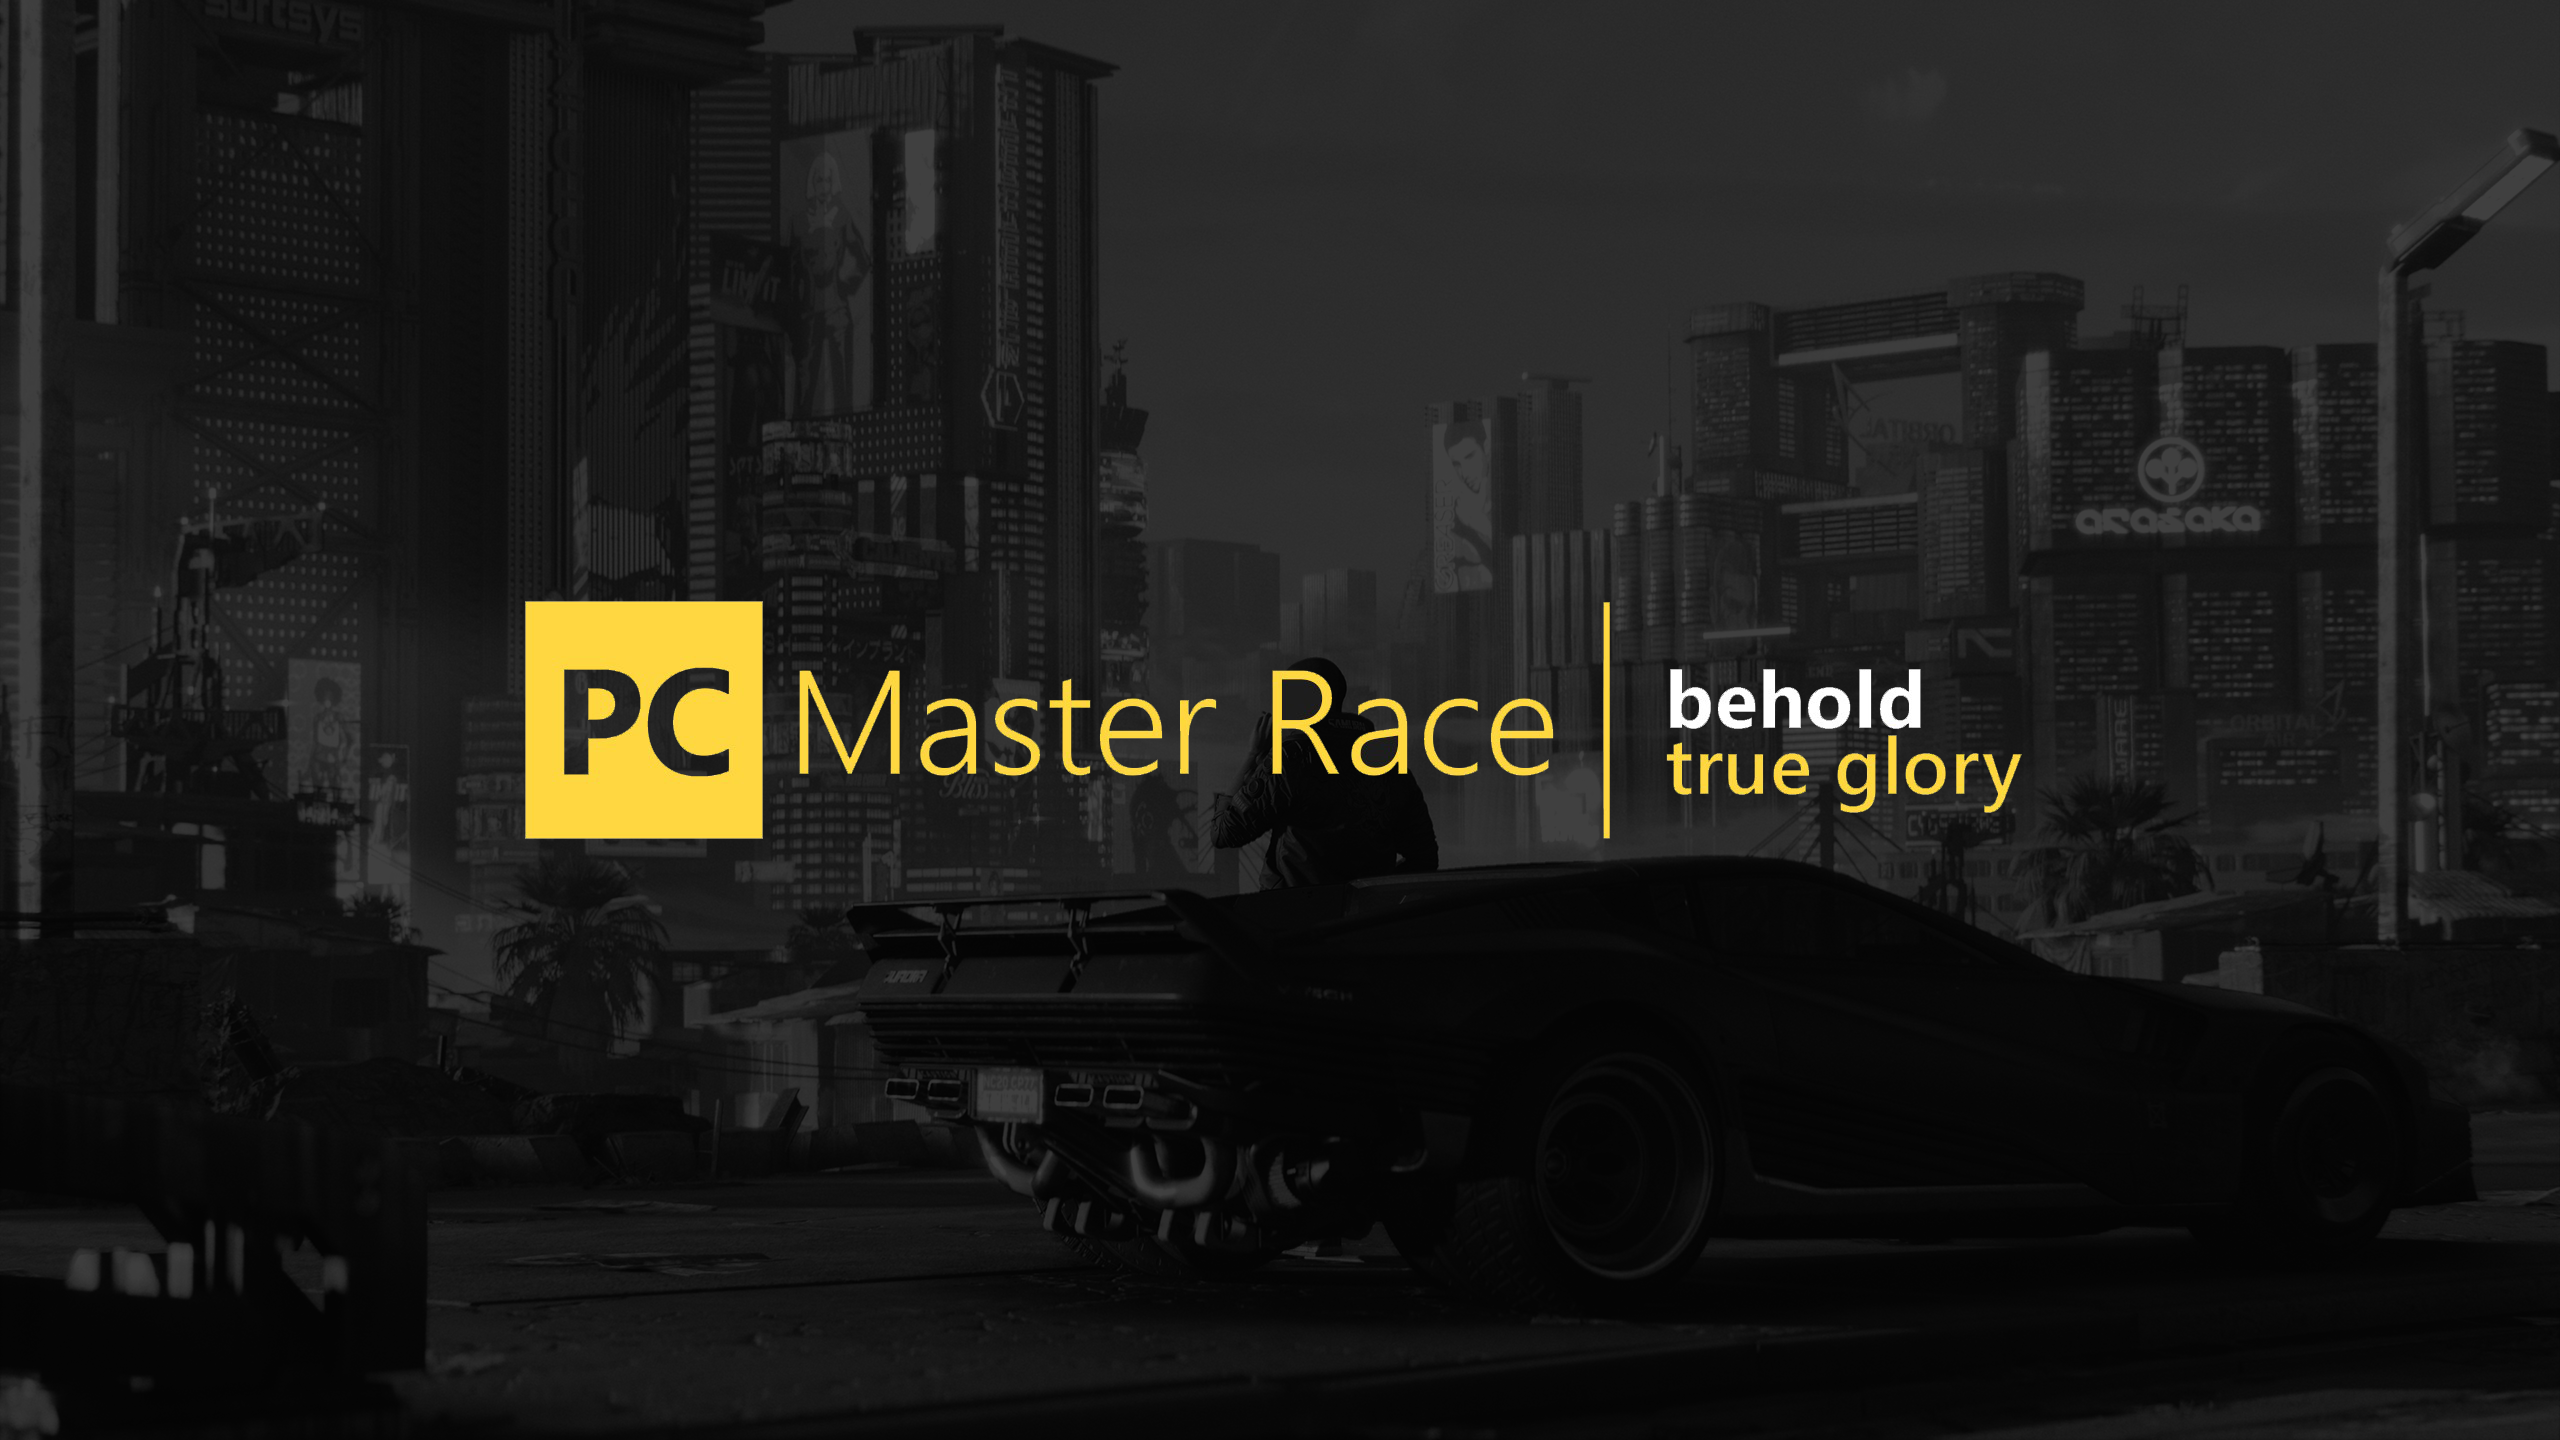 General 2560x1440 PC Master  Race PC gaming logo